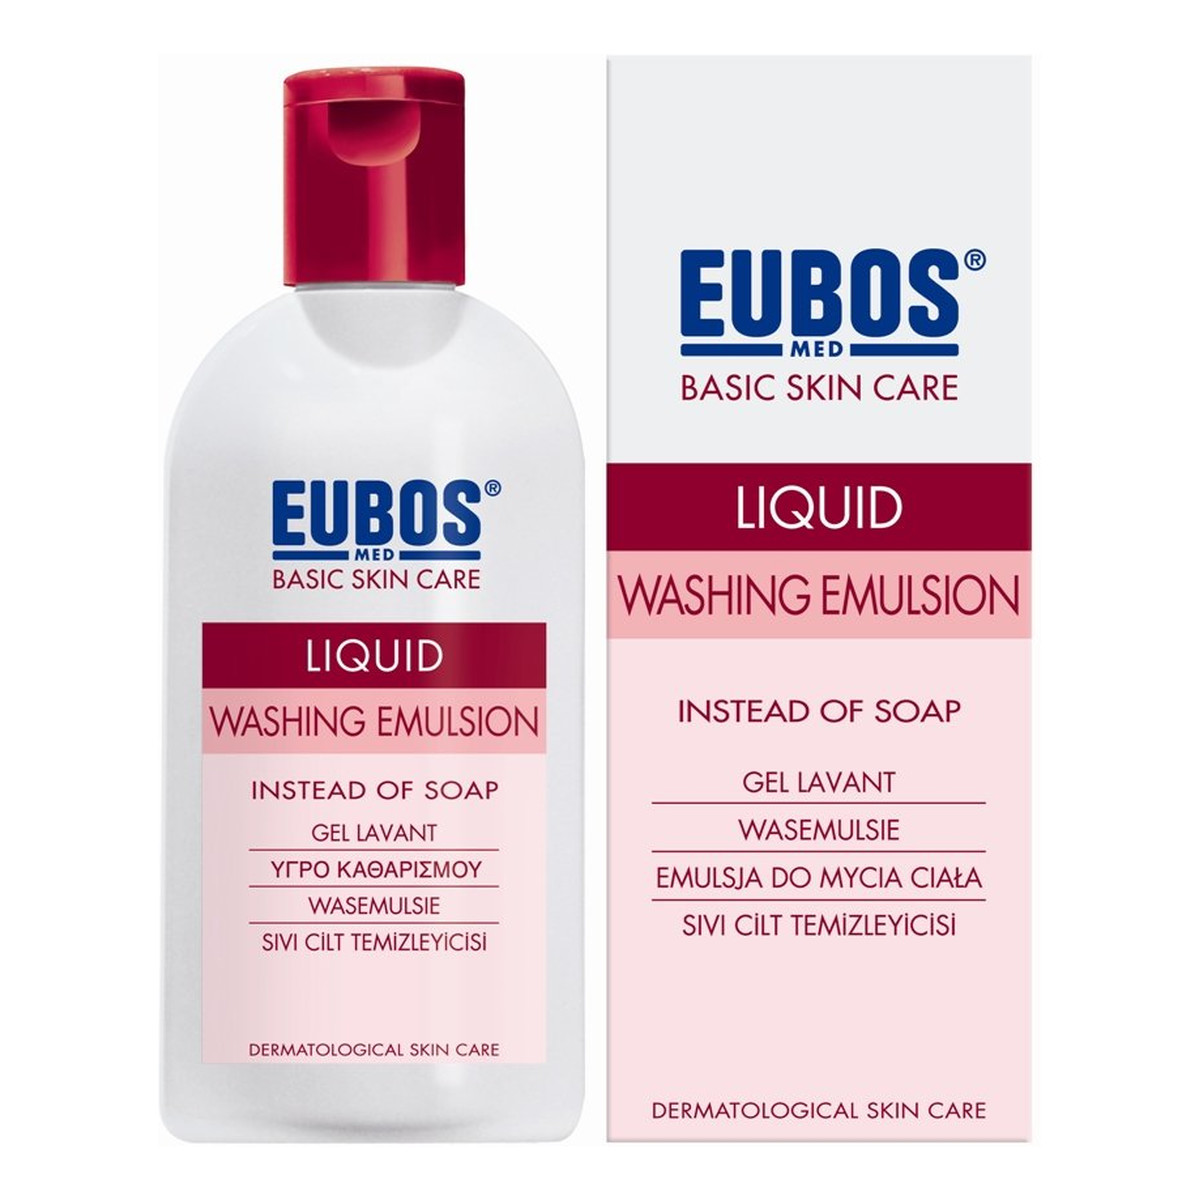 Eubos-Med Liquid Red emulsja do mycia ciała zapachowa 200ml